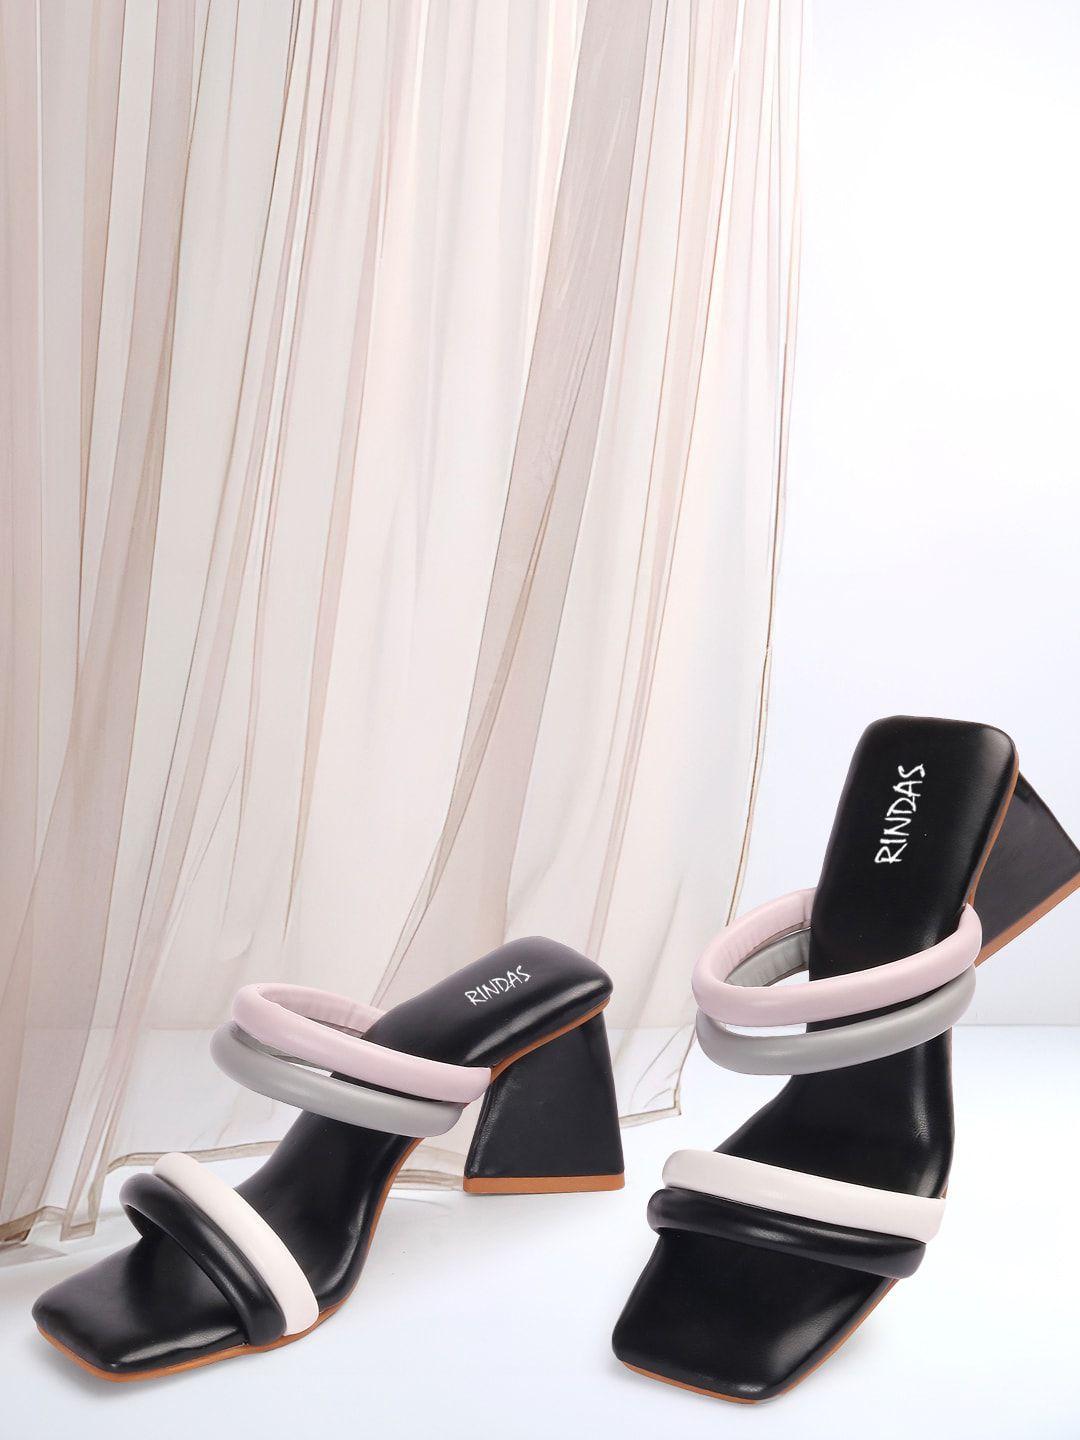 rindas block heels